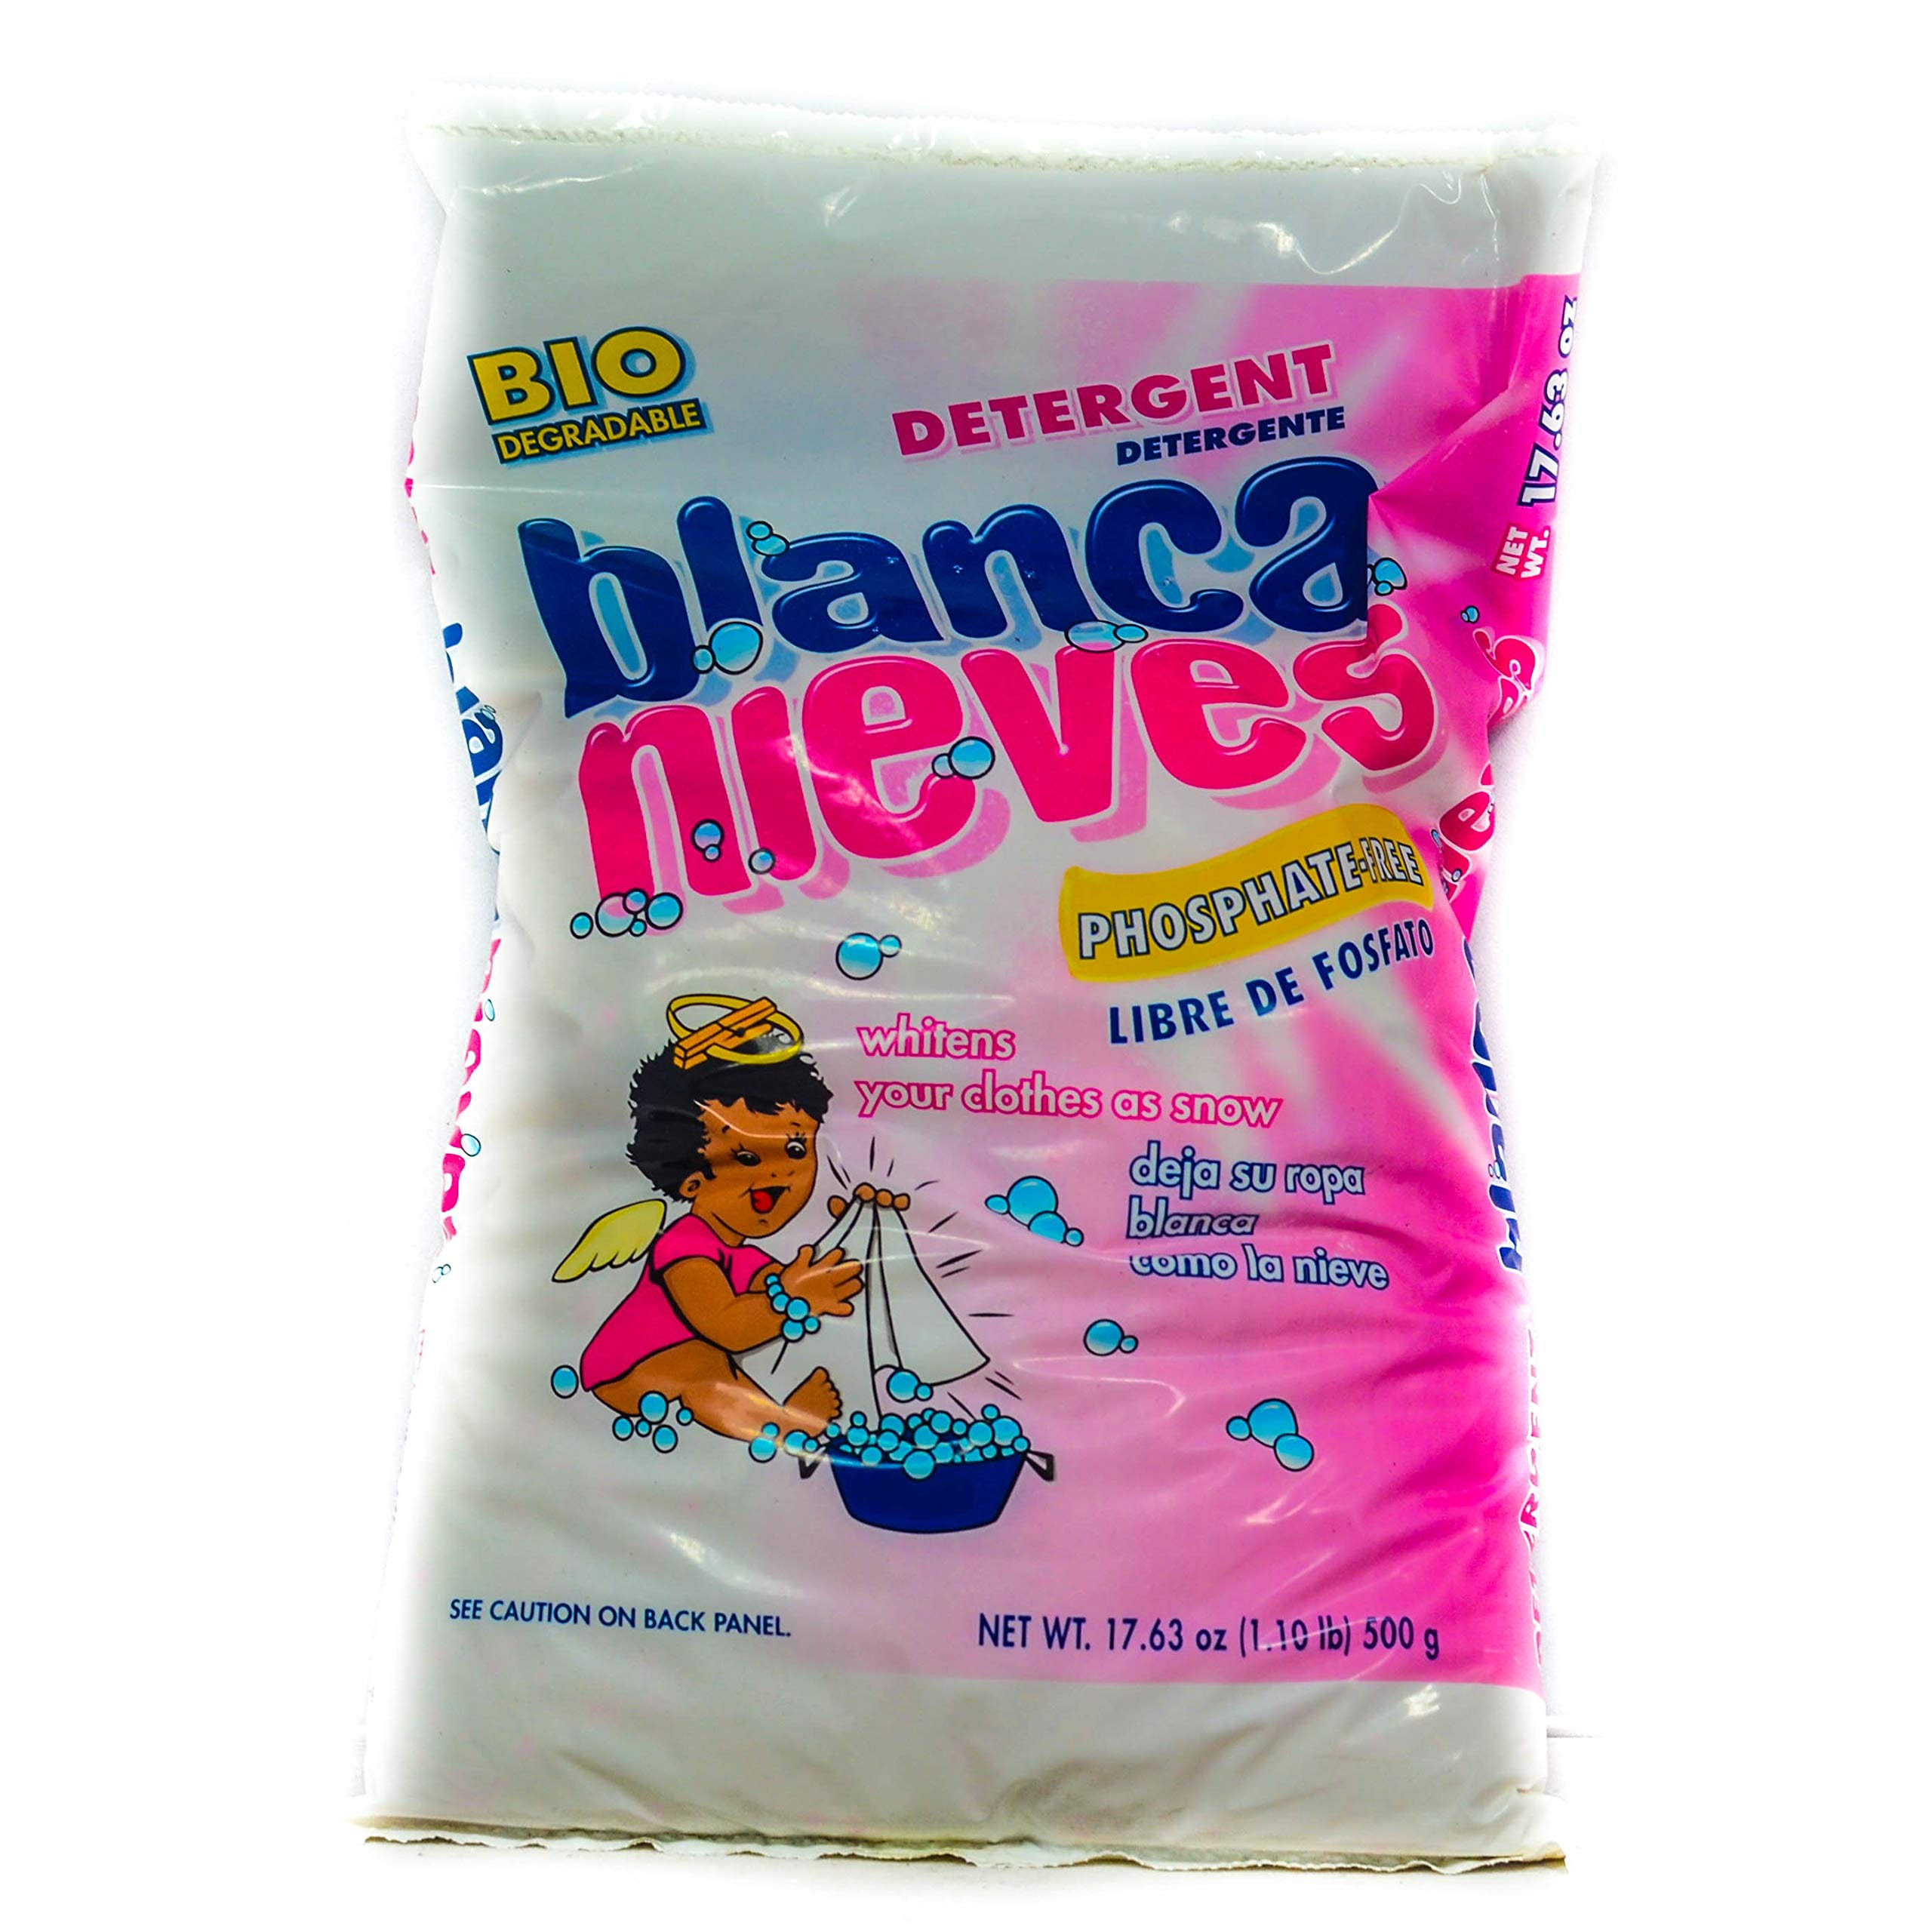 Blanca Nieve's Detergent - 500g